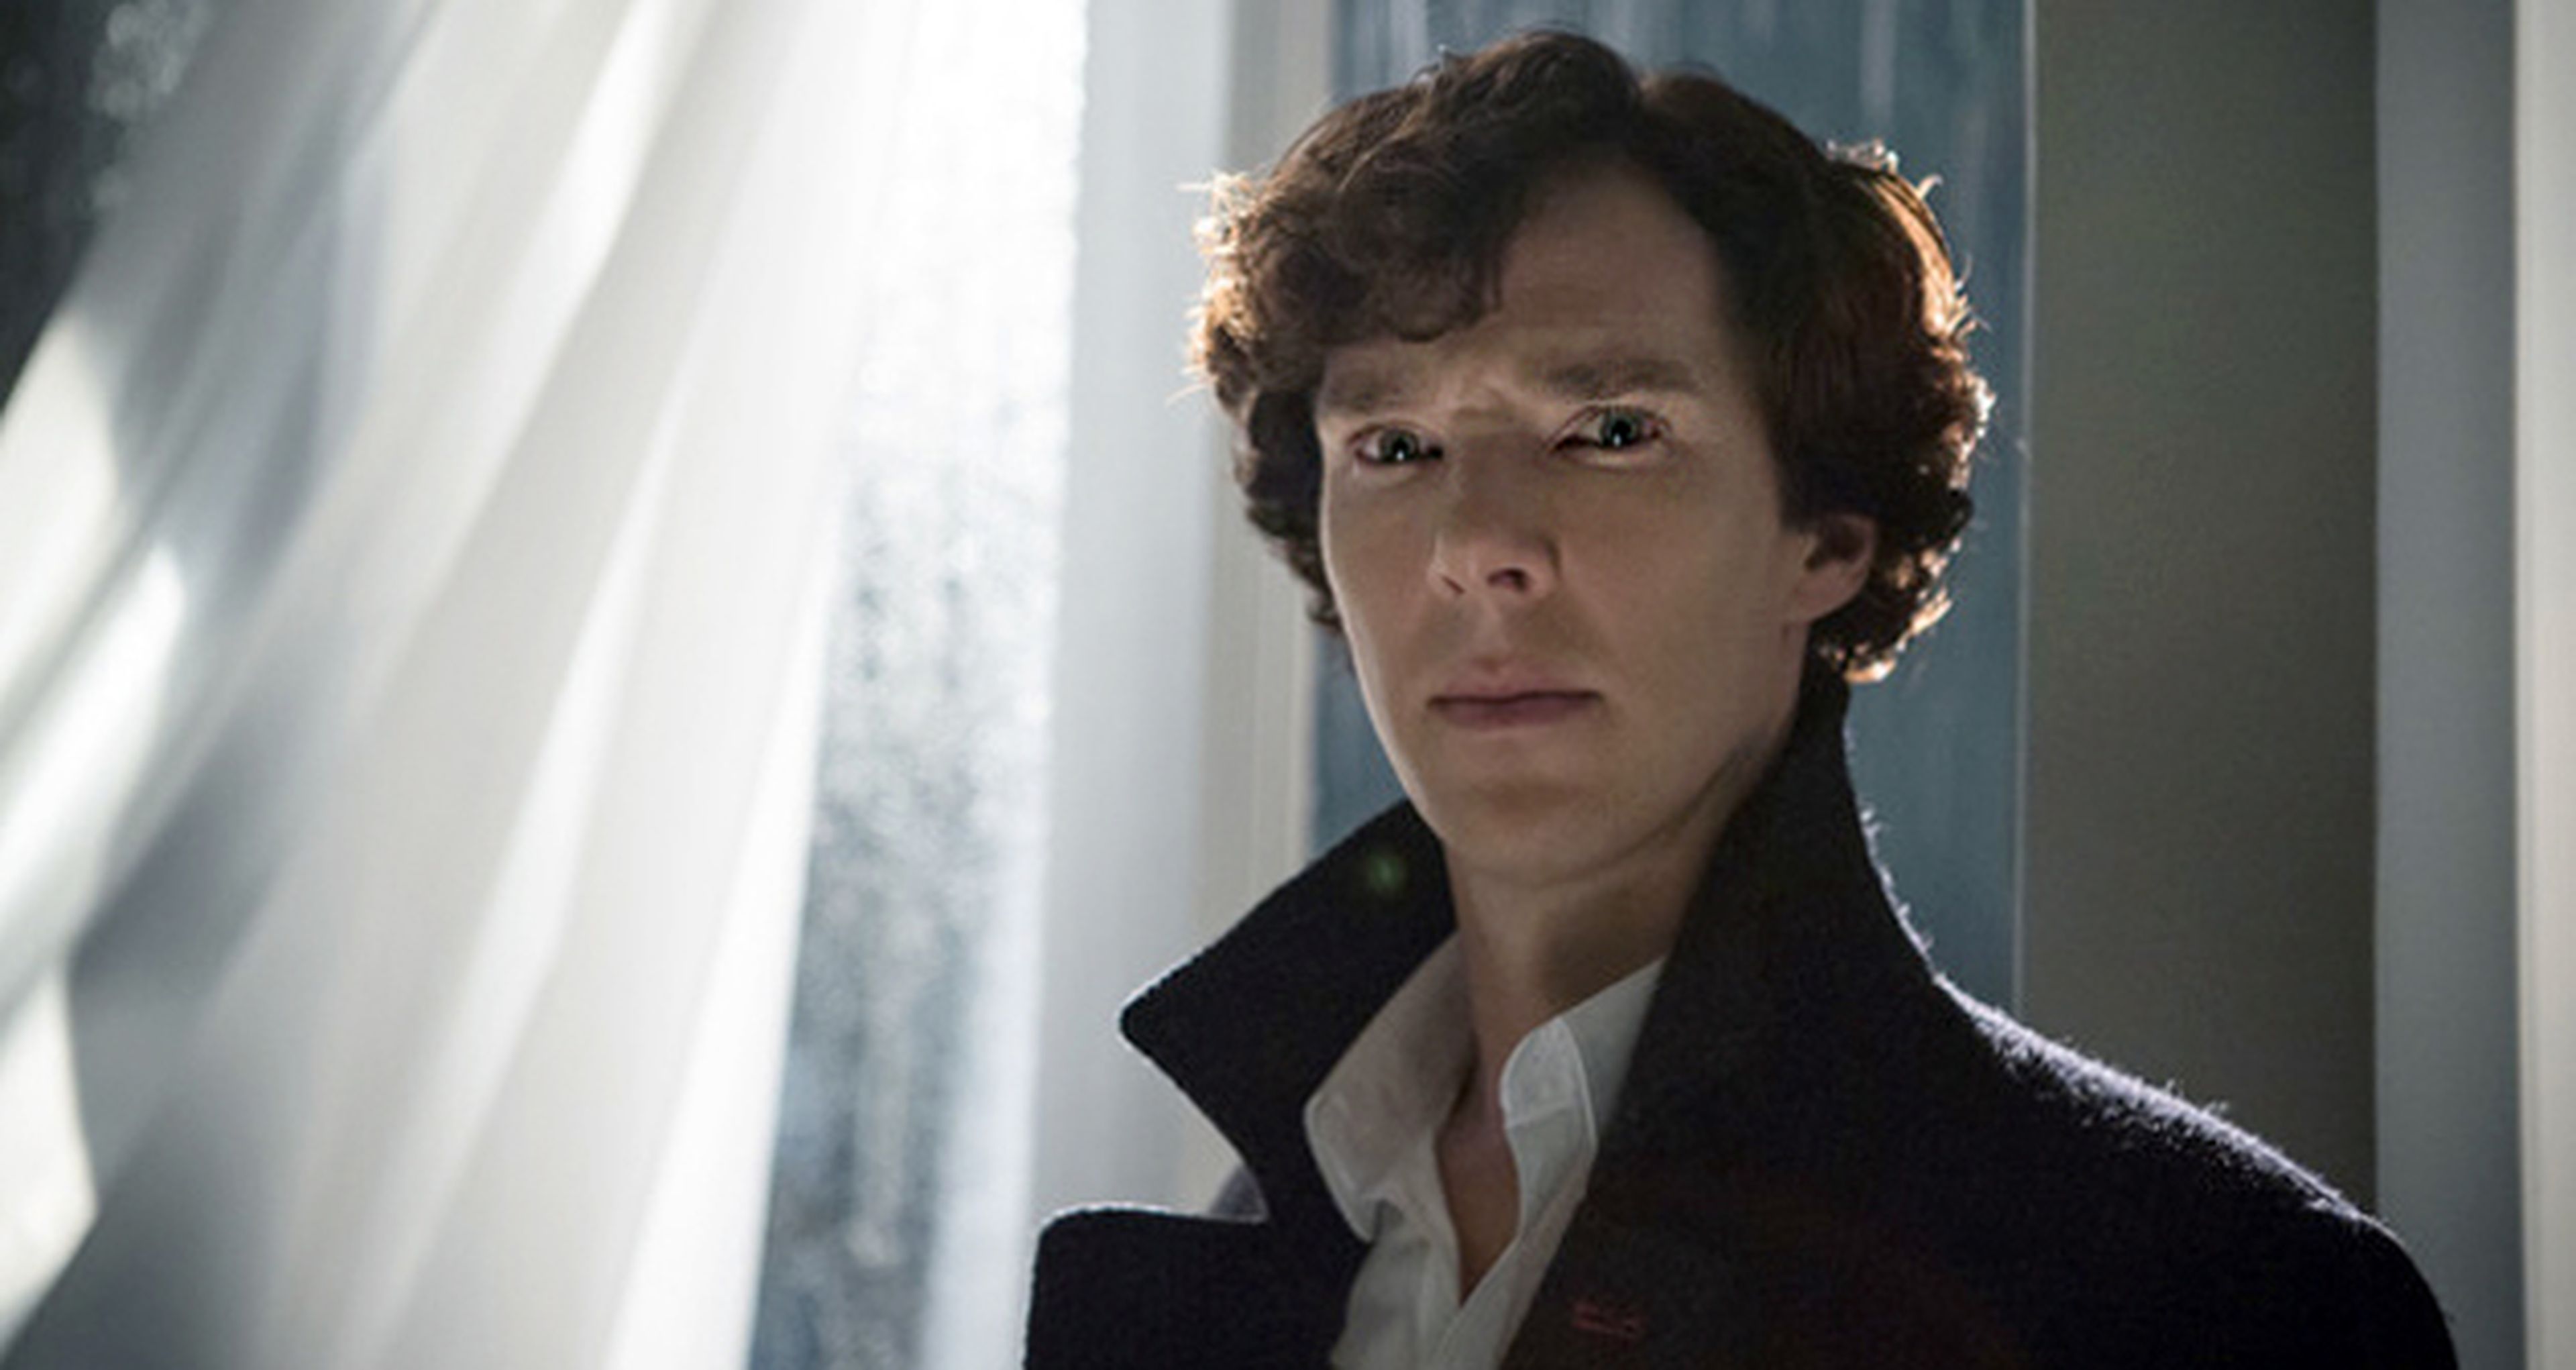 ¿Habrá un episodio especial antes de la 4ª temporada de Sherlock?